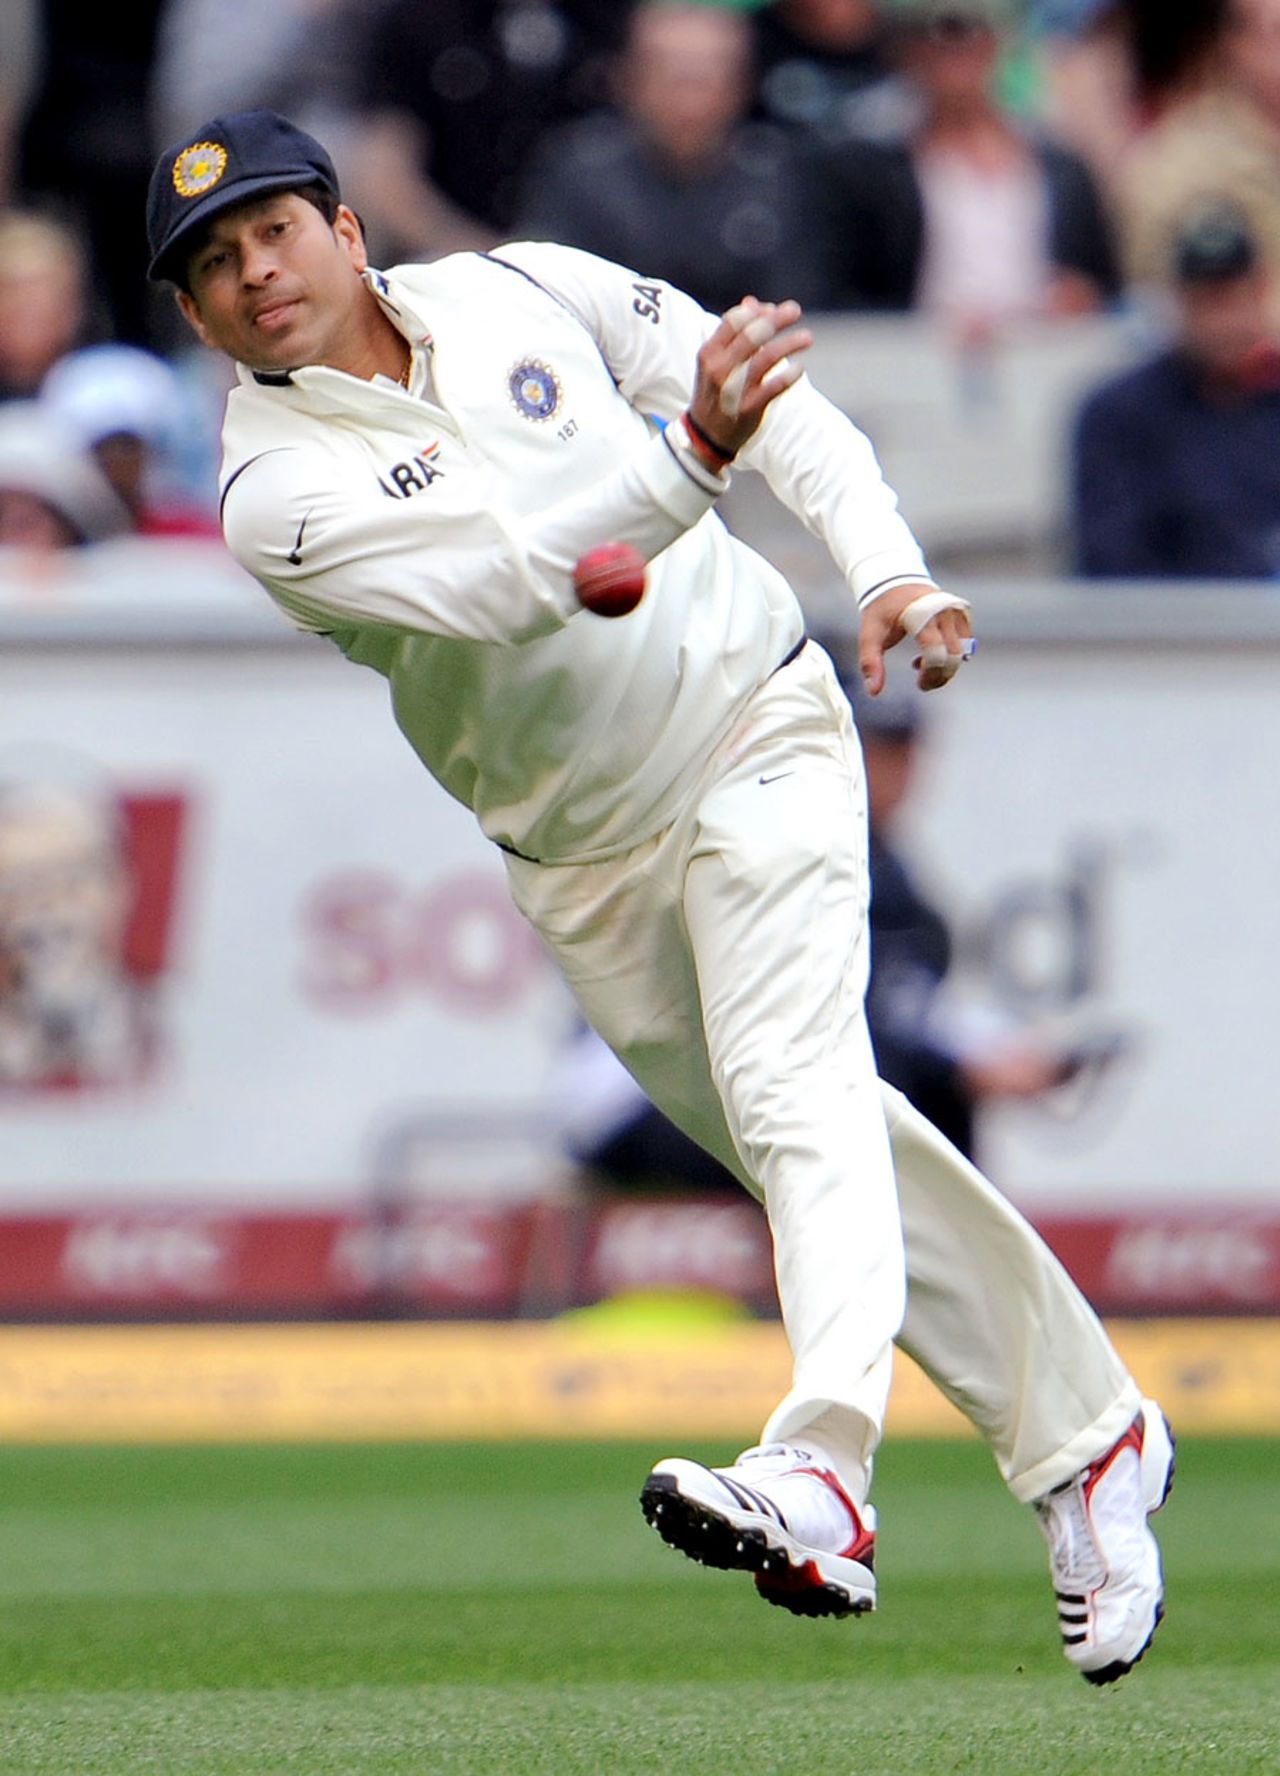 Sachin Tendulkar fires in a throw, Australia v India, 1st Test, Melbourne, 1st day, December 26, 2011